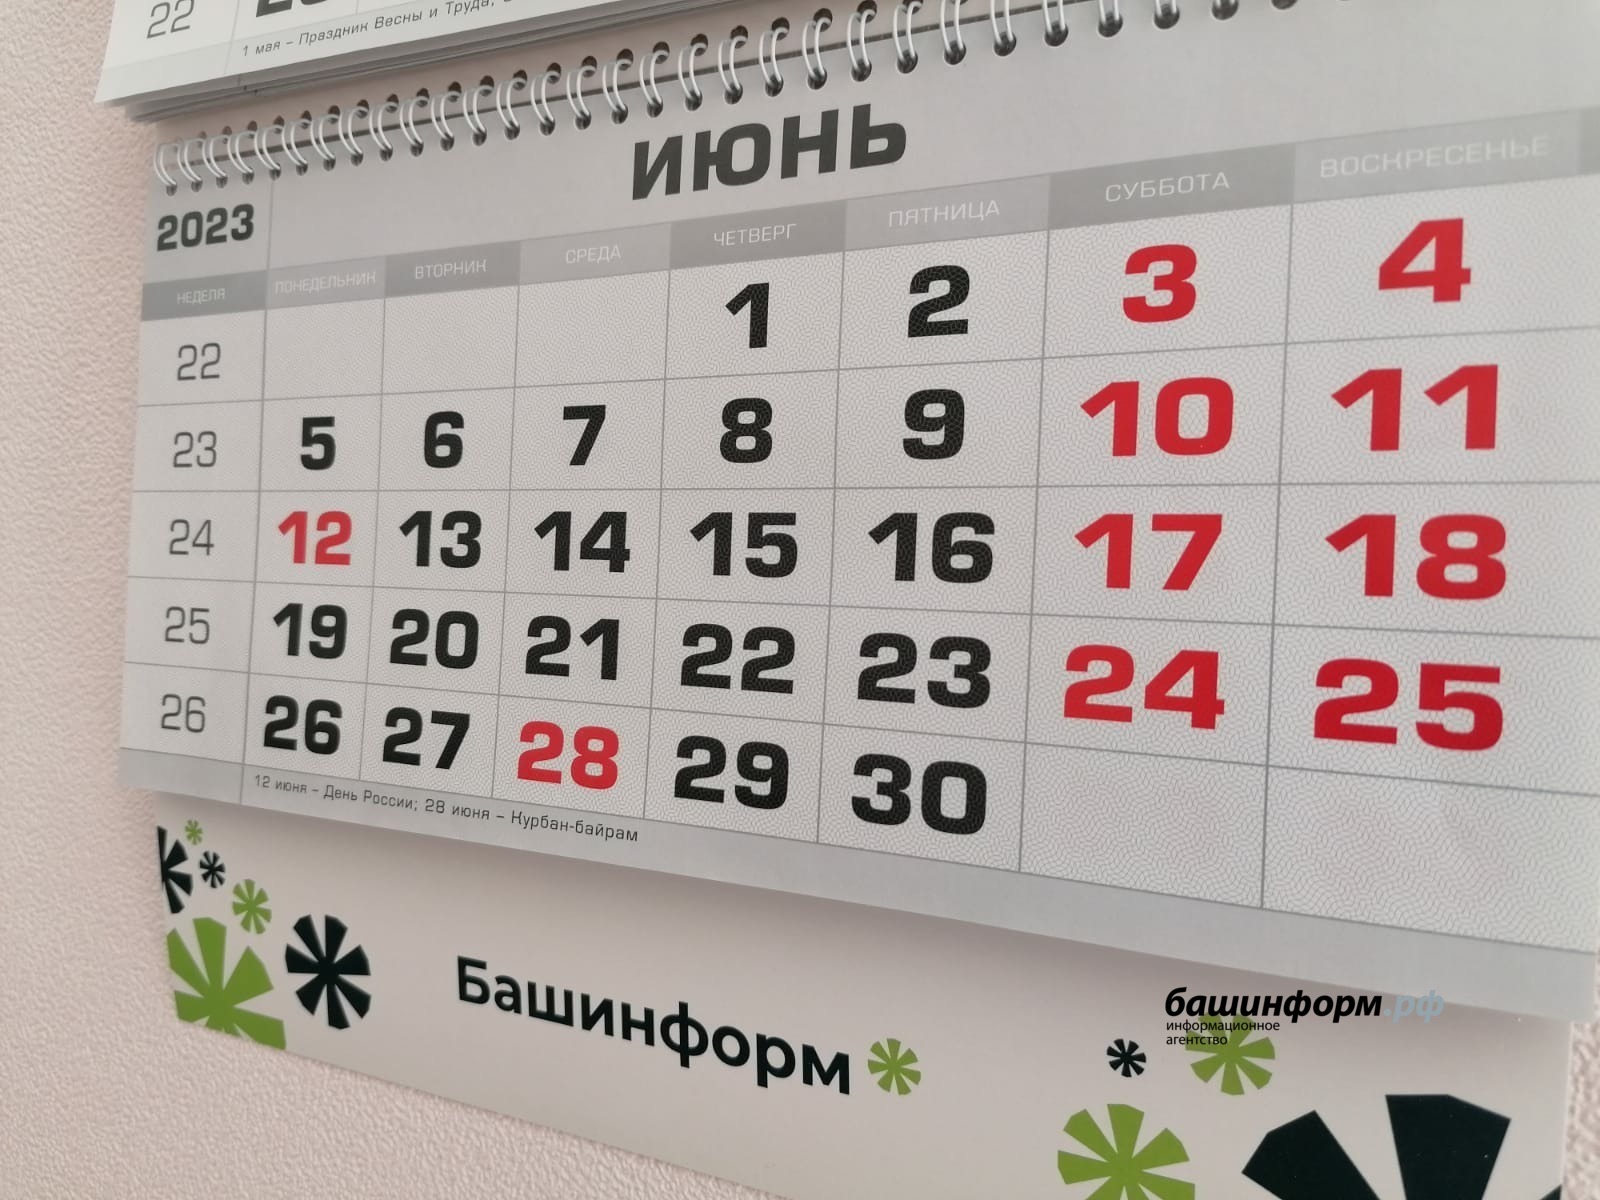 Праздничные дни в апреле 2024 в башкирии. Нерабочие дни в июне 2023 в Башкирии. Праздничные дни в июне 2023 года в Башкирии. В июне есть праздничные выходные в 2023. В июне выходные выходные 2023.